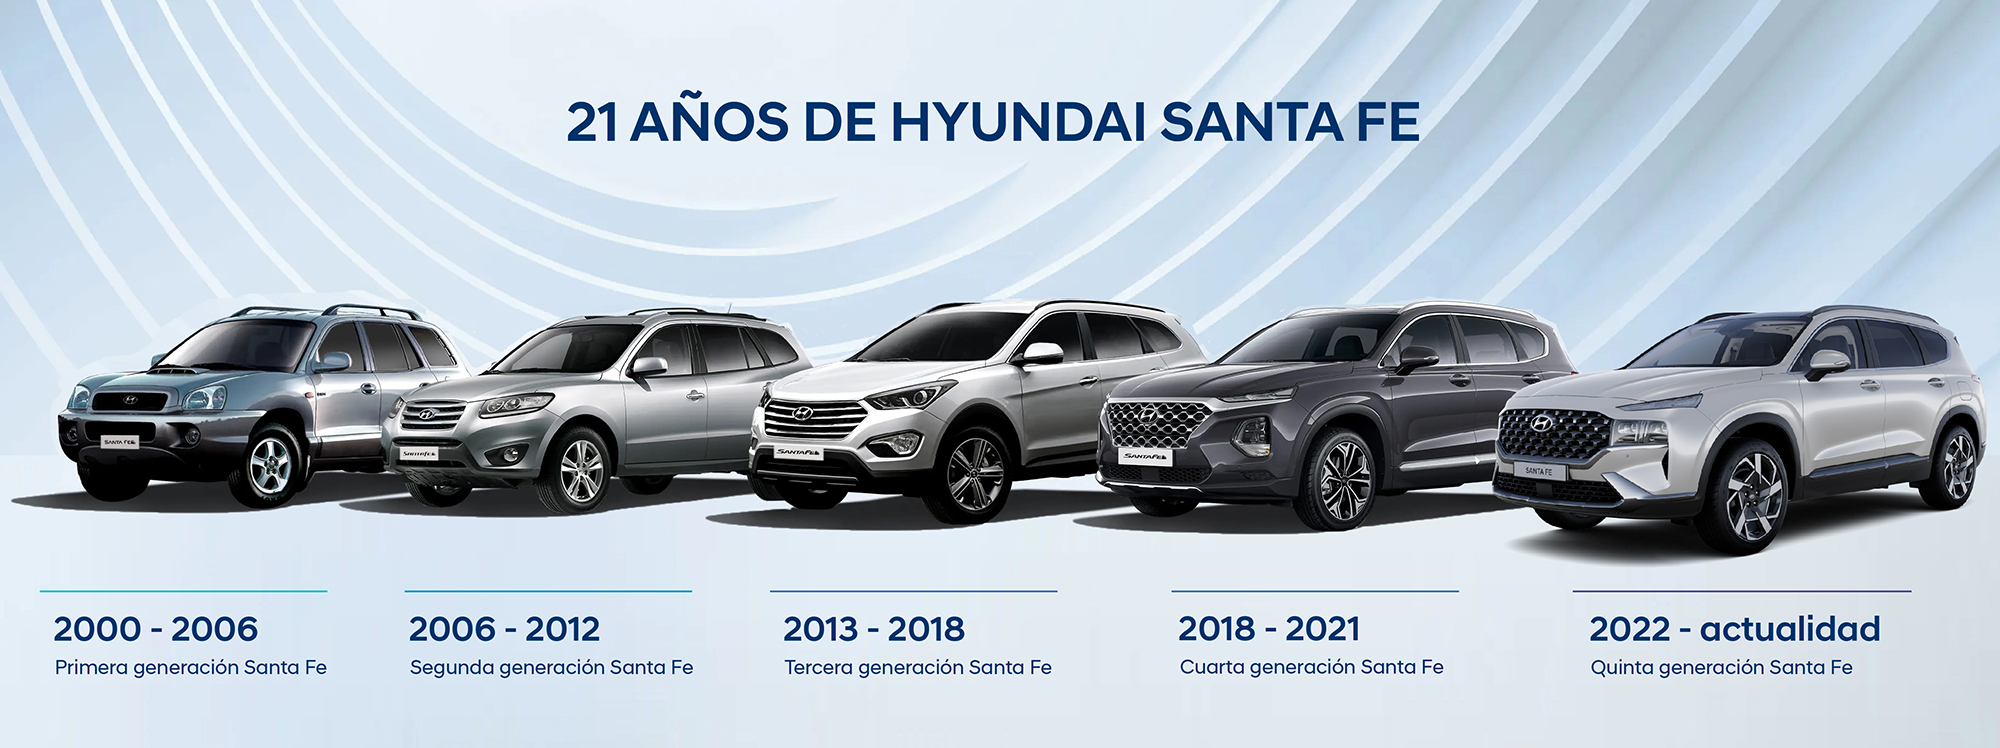 Hyundai Santa Fe, 21 años del primer SUV de la marca